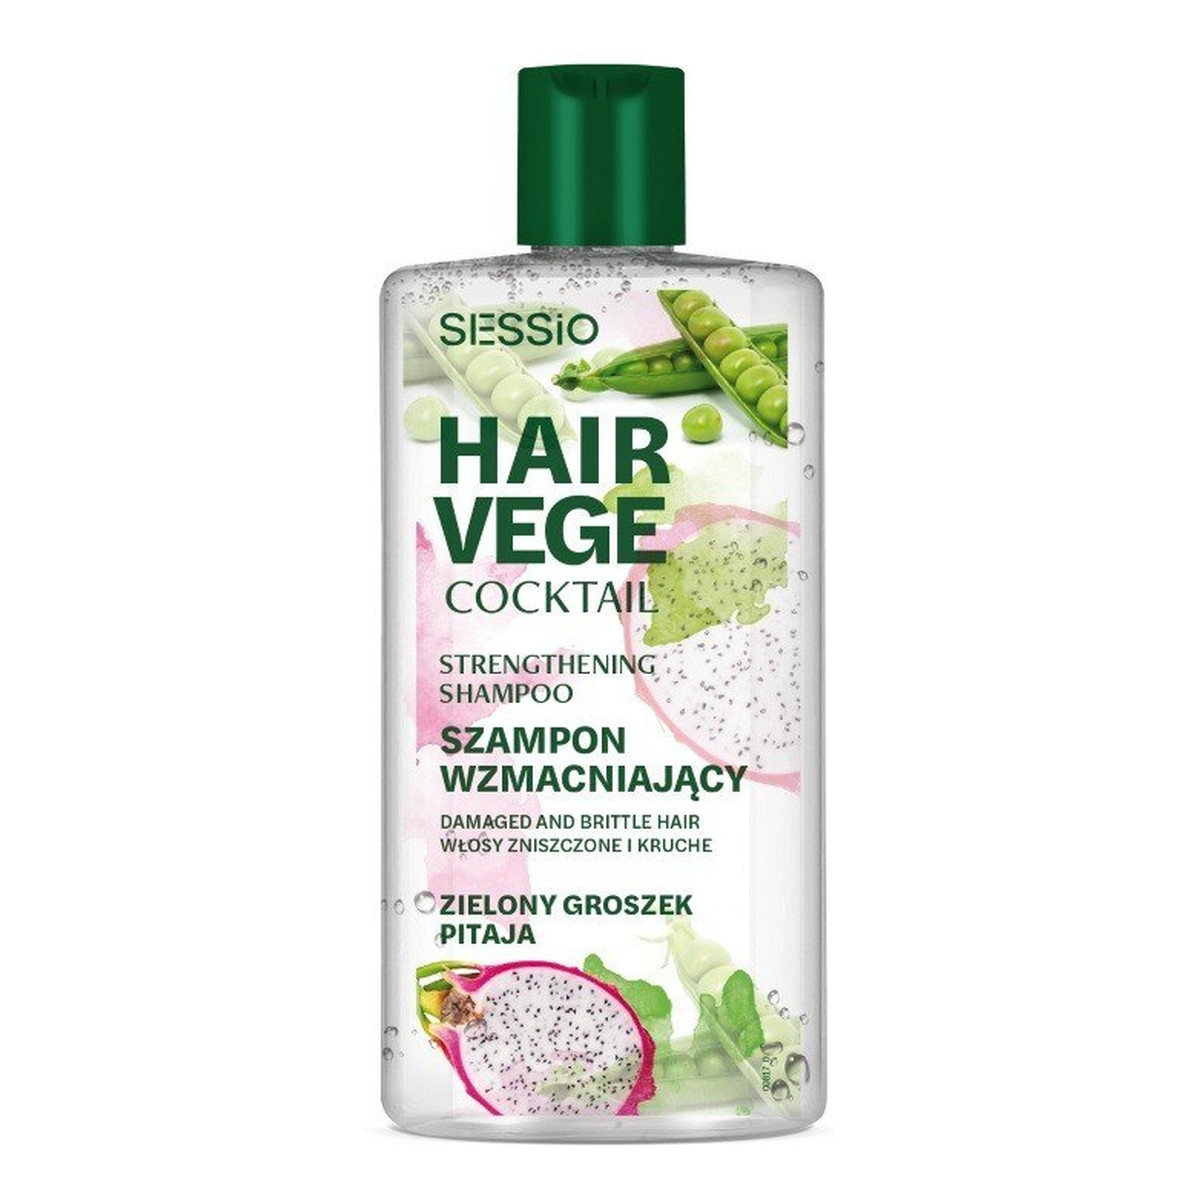 Sessio Hair Vege Cocktail Hair Vege Coctail Szampon wzmacniający do włosów - Green Peas 300ml